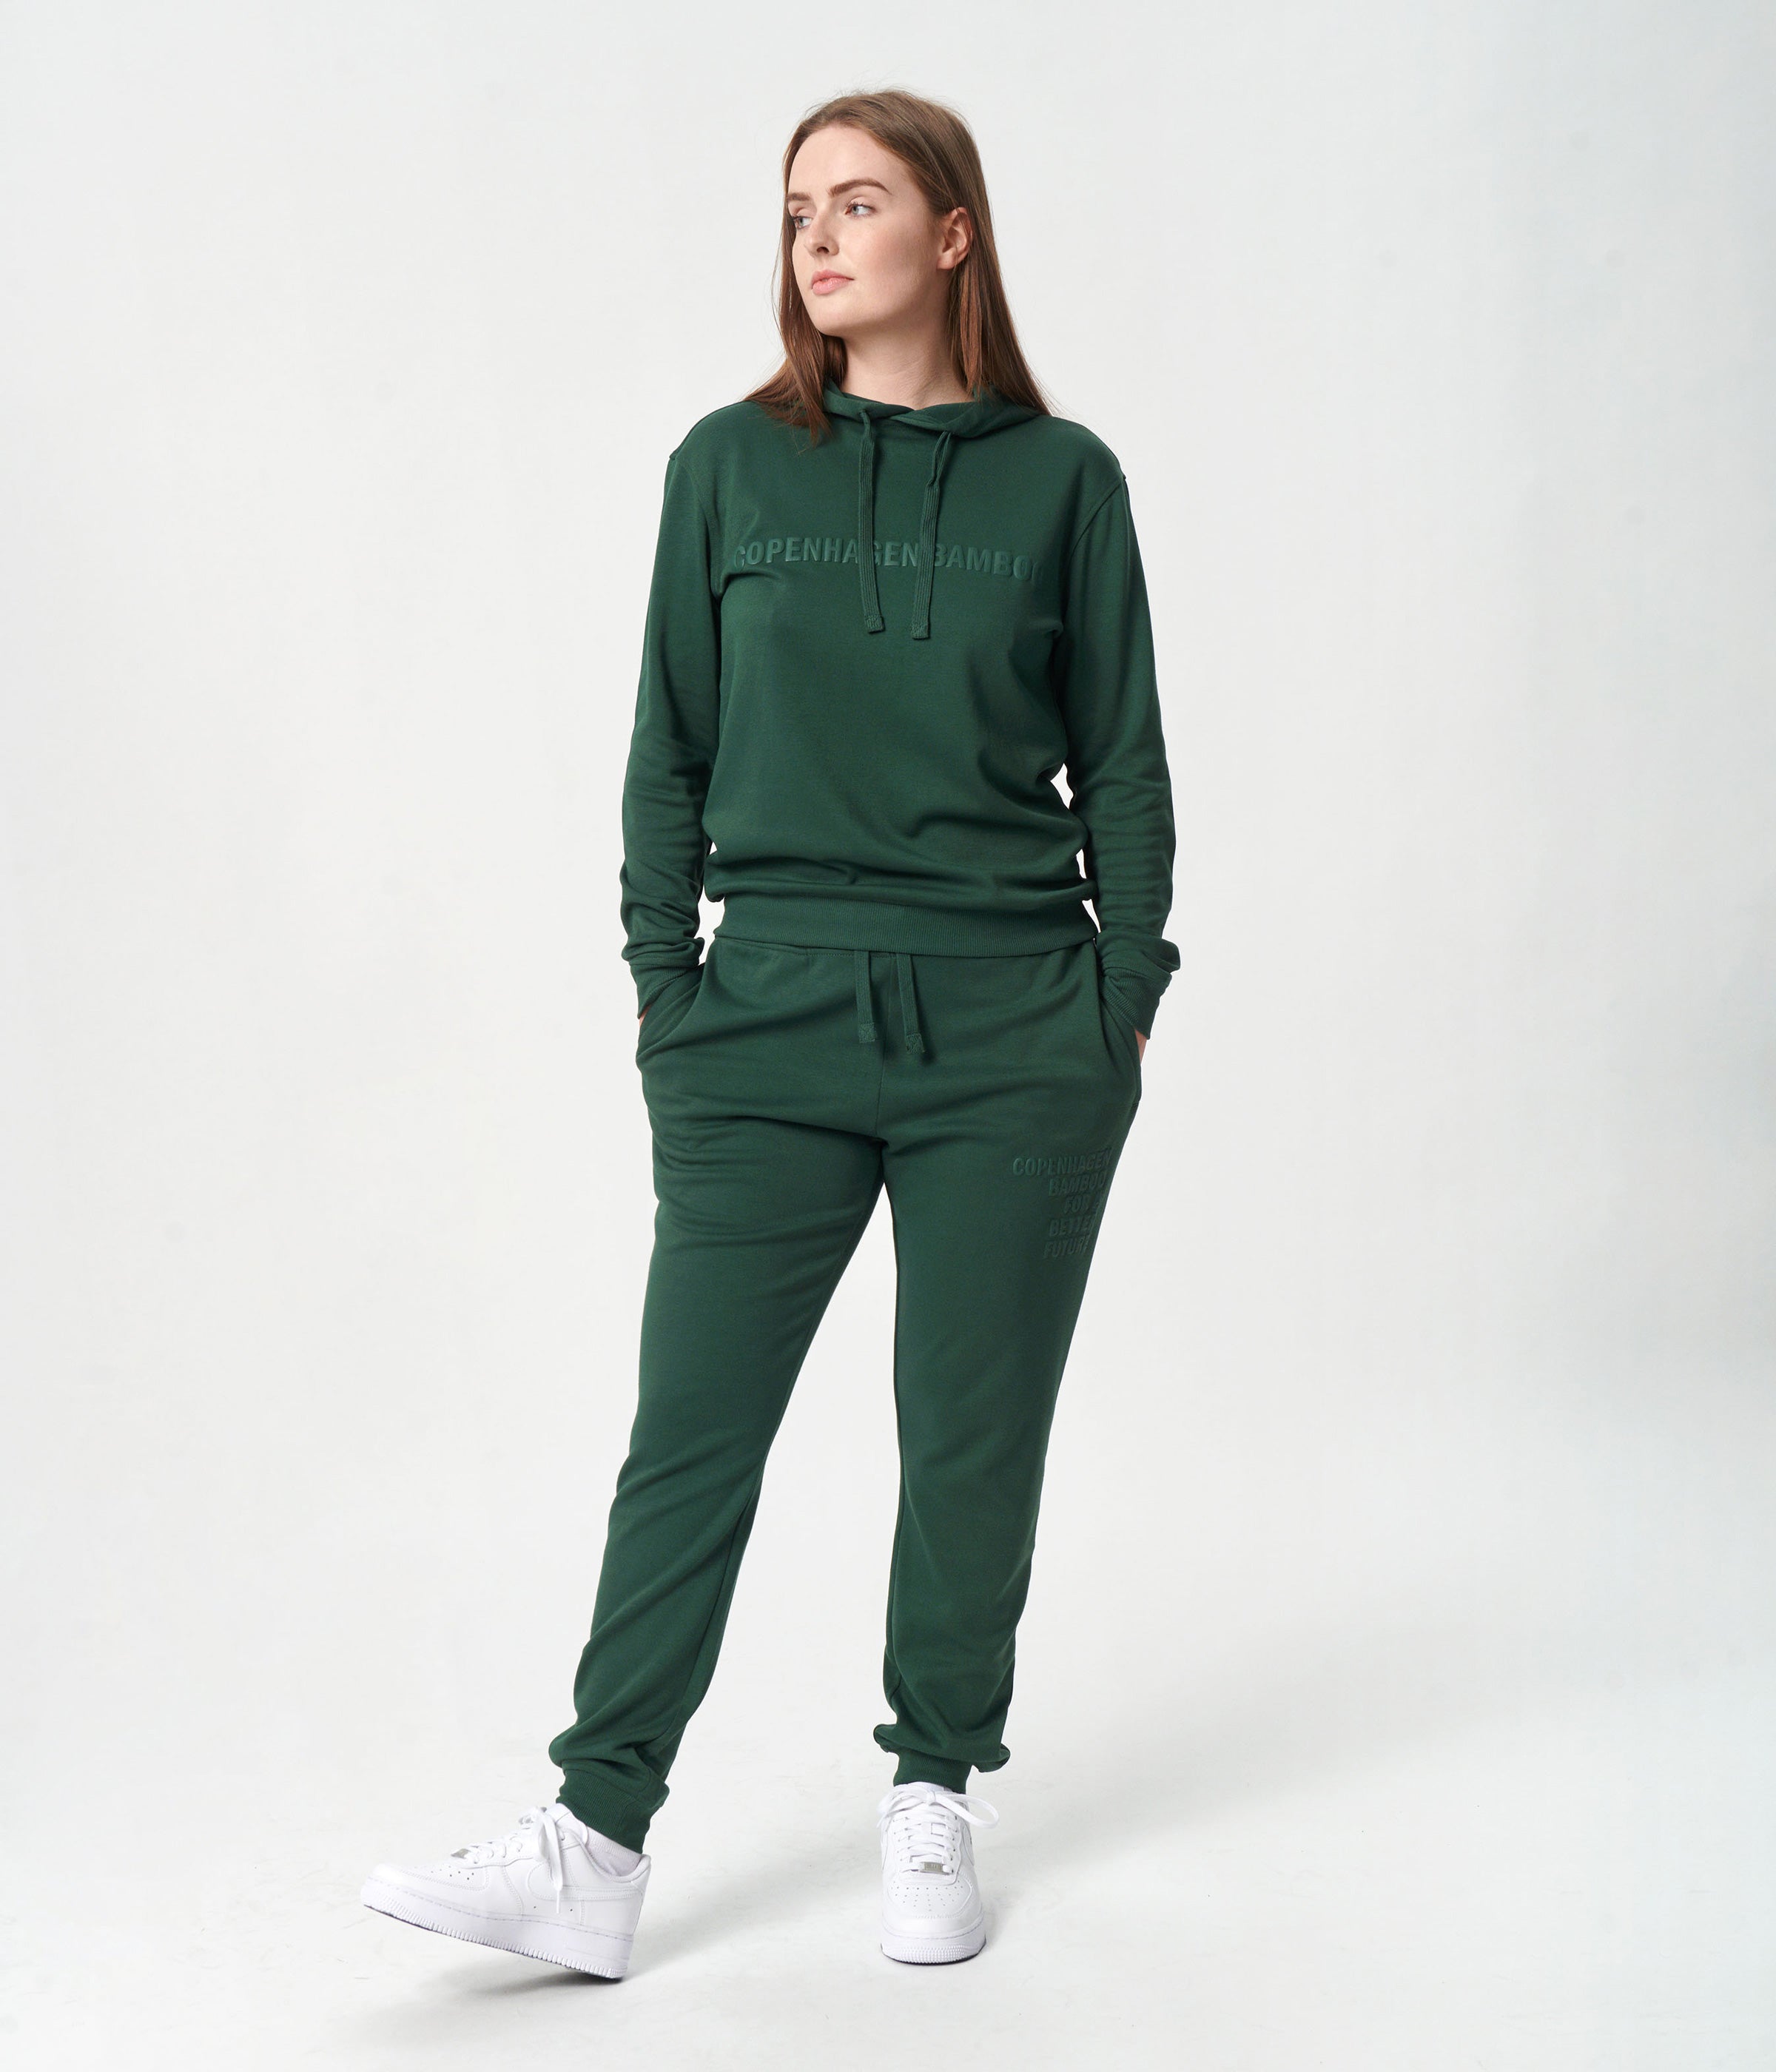 Billede af Bambus hoodie joggingsæt i grøn med logo til damer fra Copenhagen Bamboo, XS